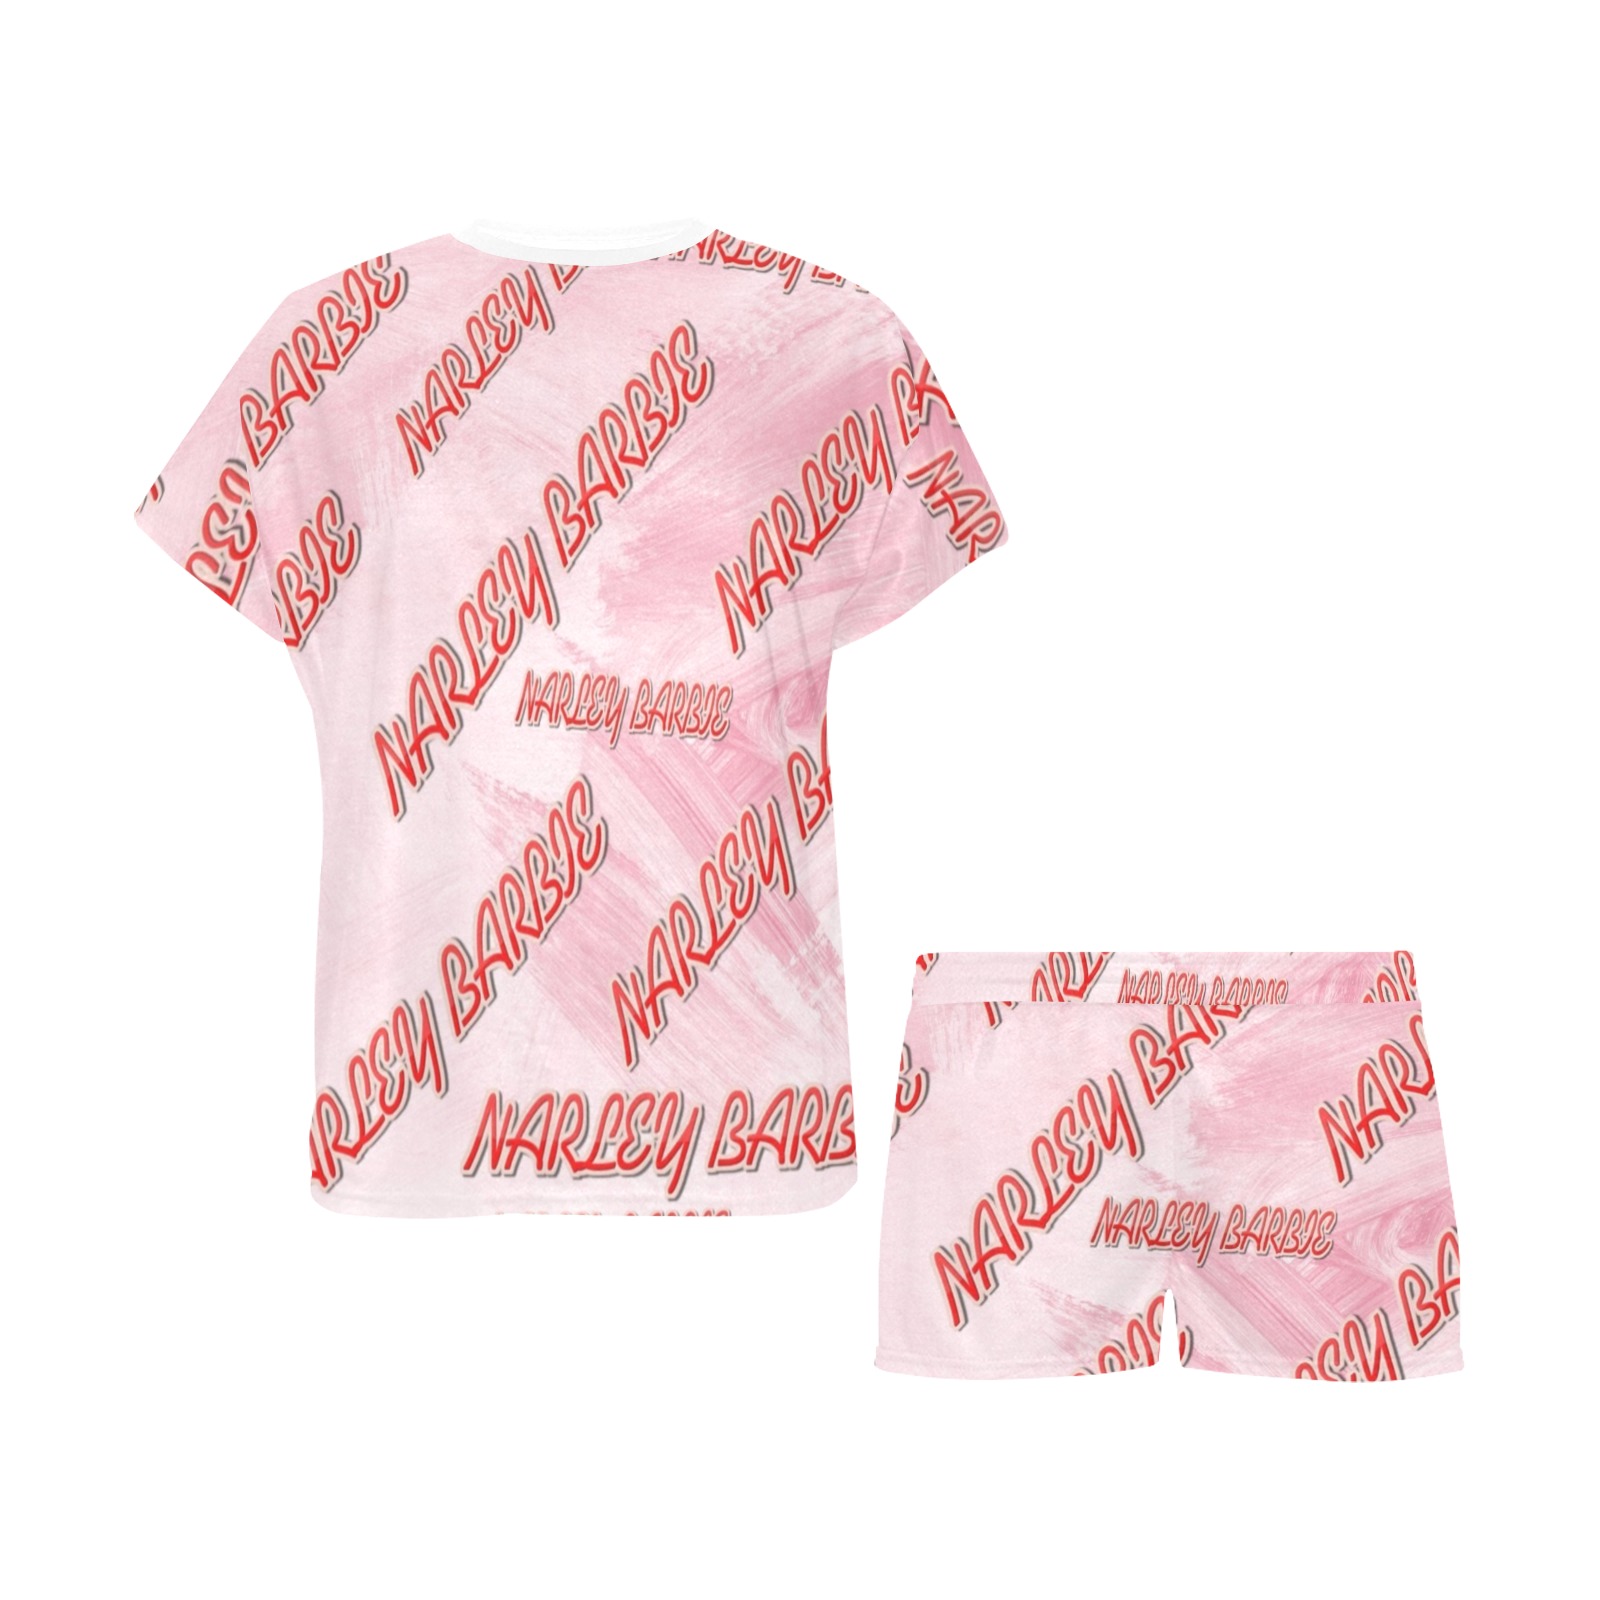 Narbie Baddie Type Women's Short Pajama Set